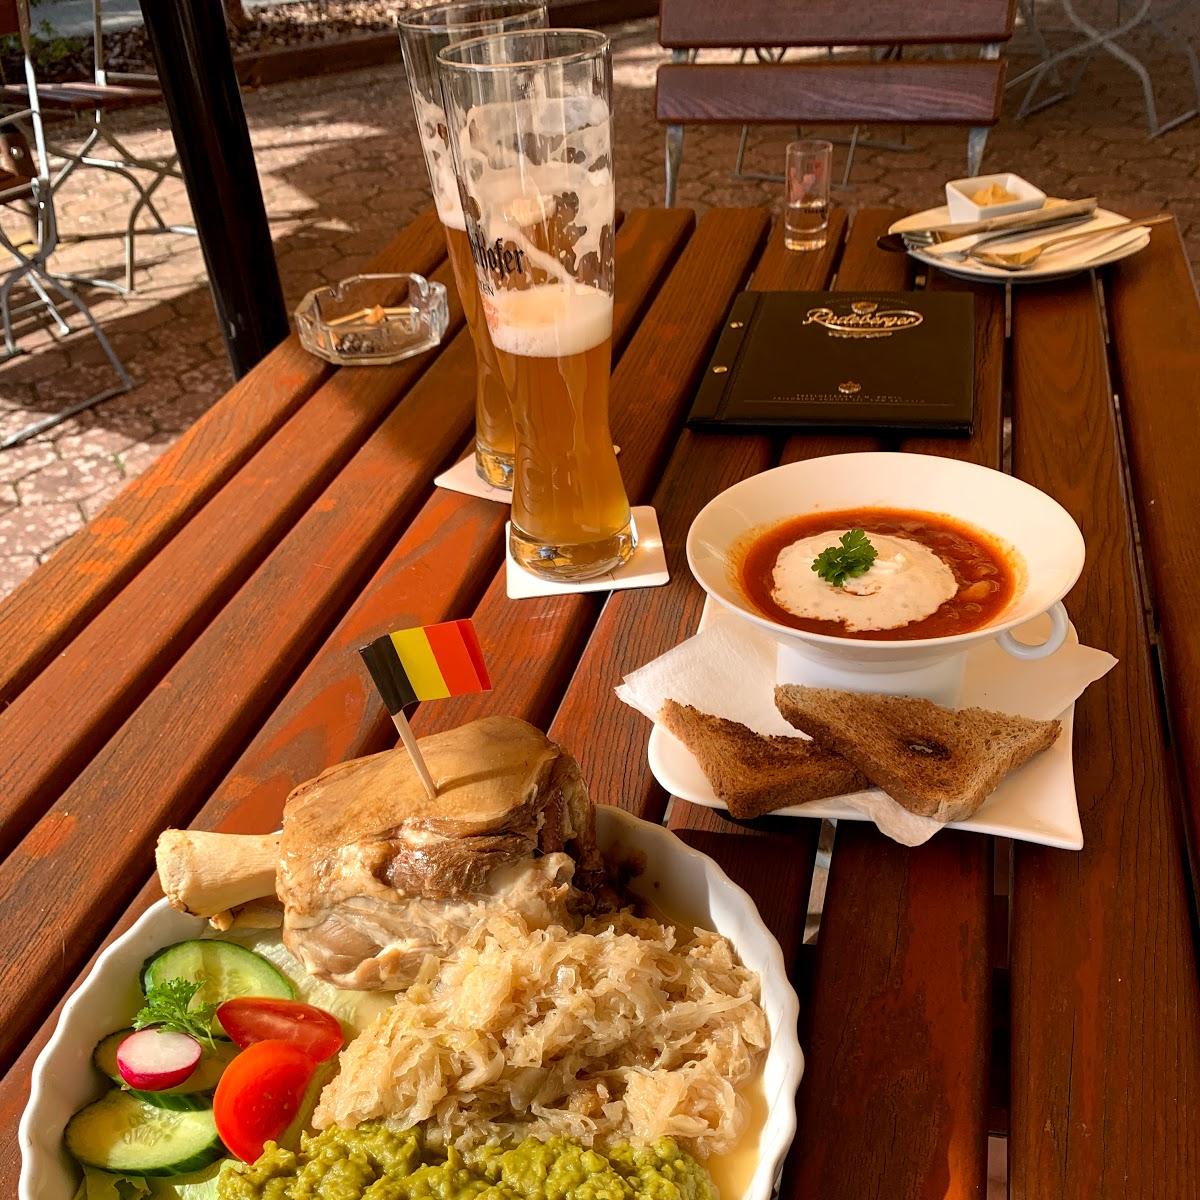 Restaurant "Gaststätte zum Dicken" in Milmersdorf